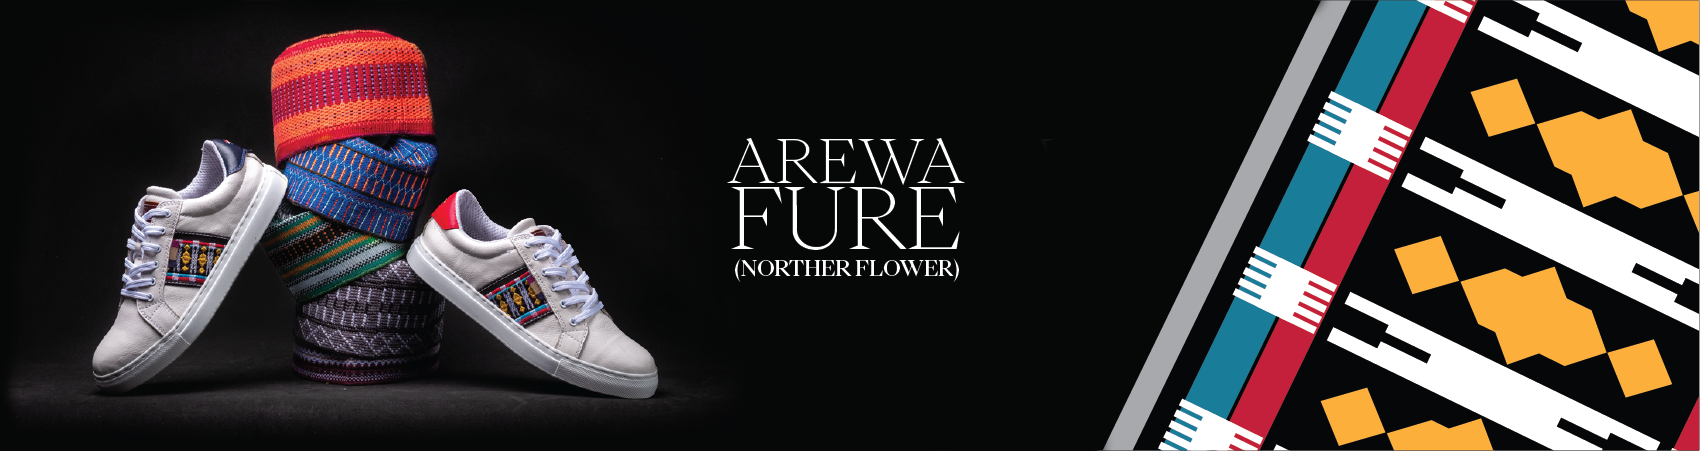 Ethnik Africa Arewa northern flower Plimsoll sneakers